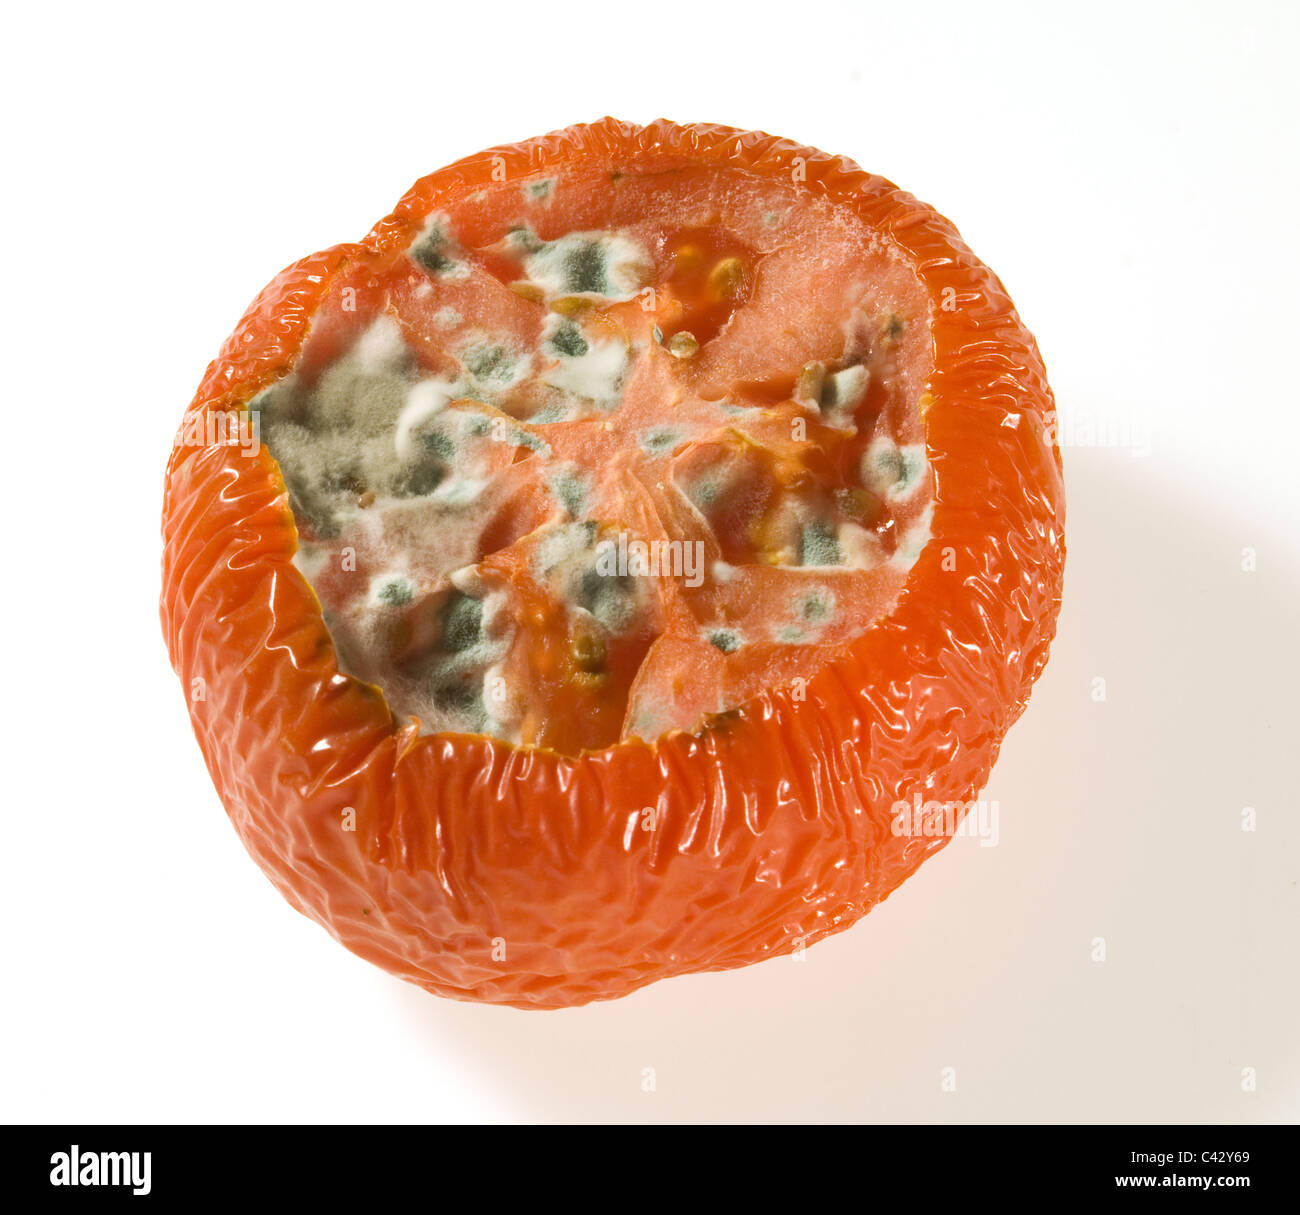 Vieille Tomate pourrie sur un fond blanc Banque D'Images